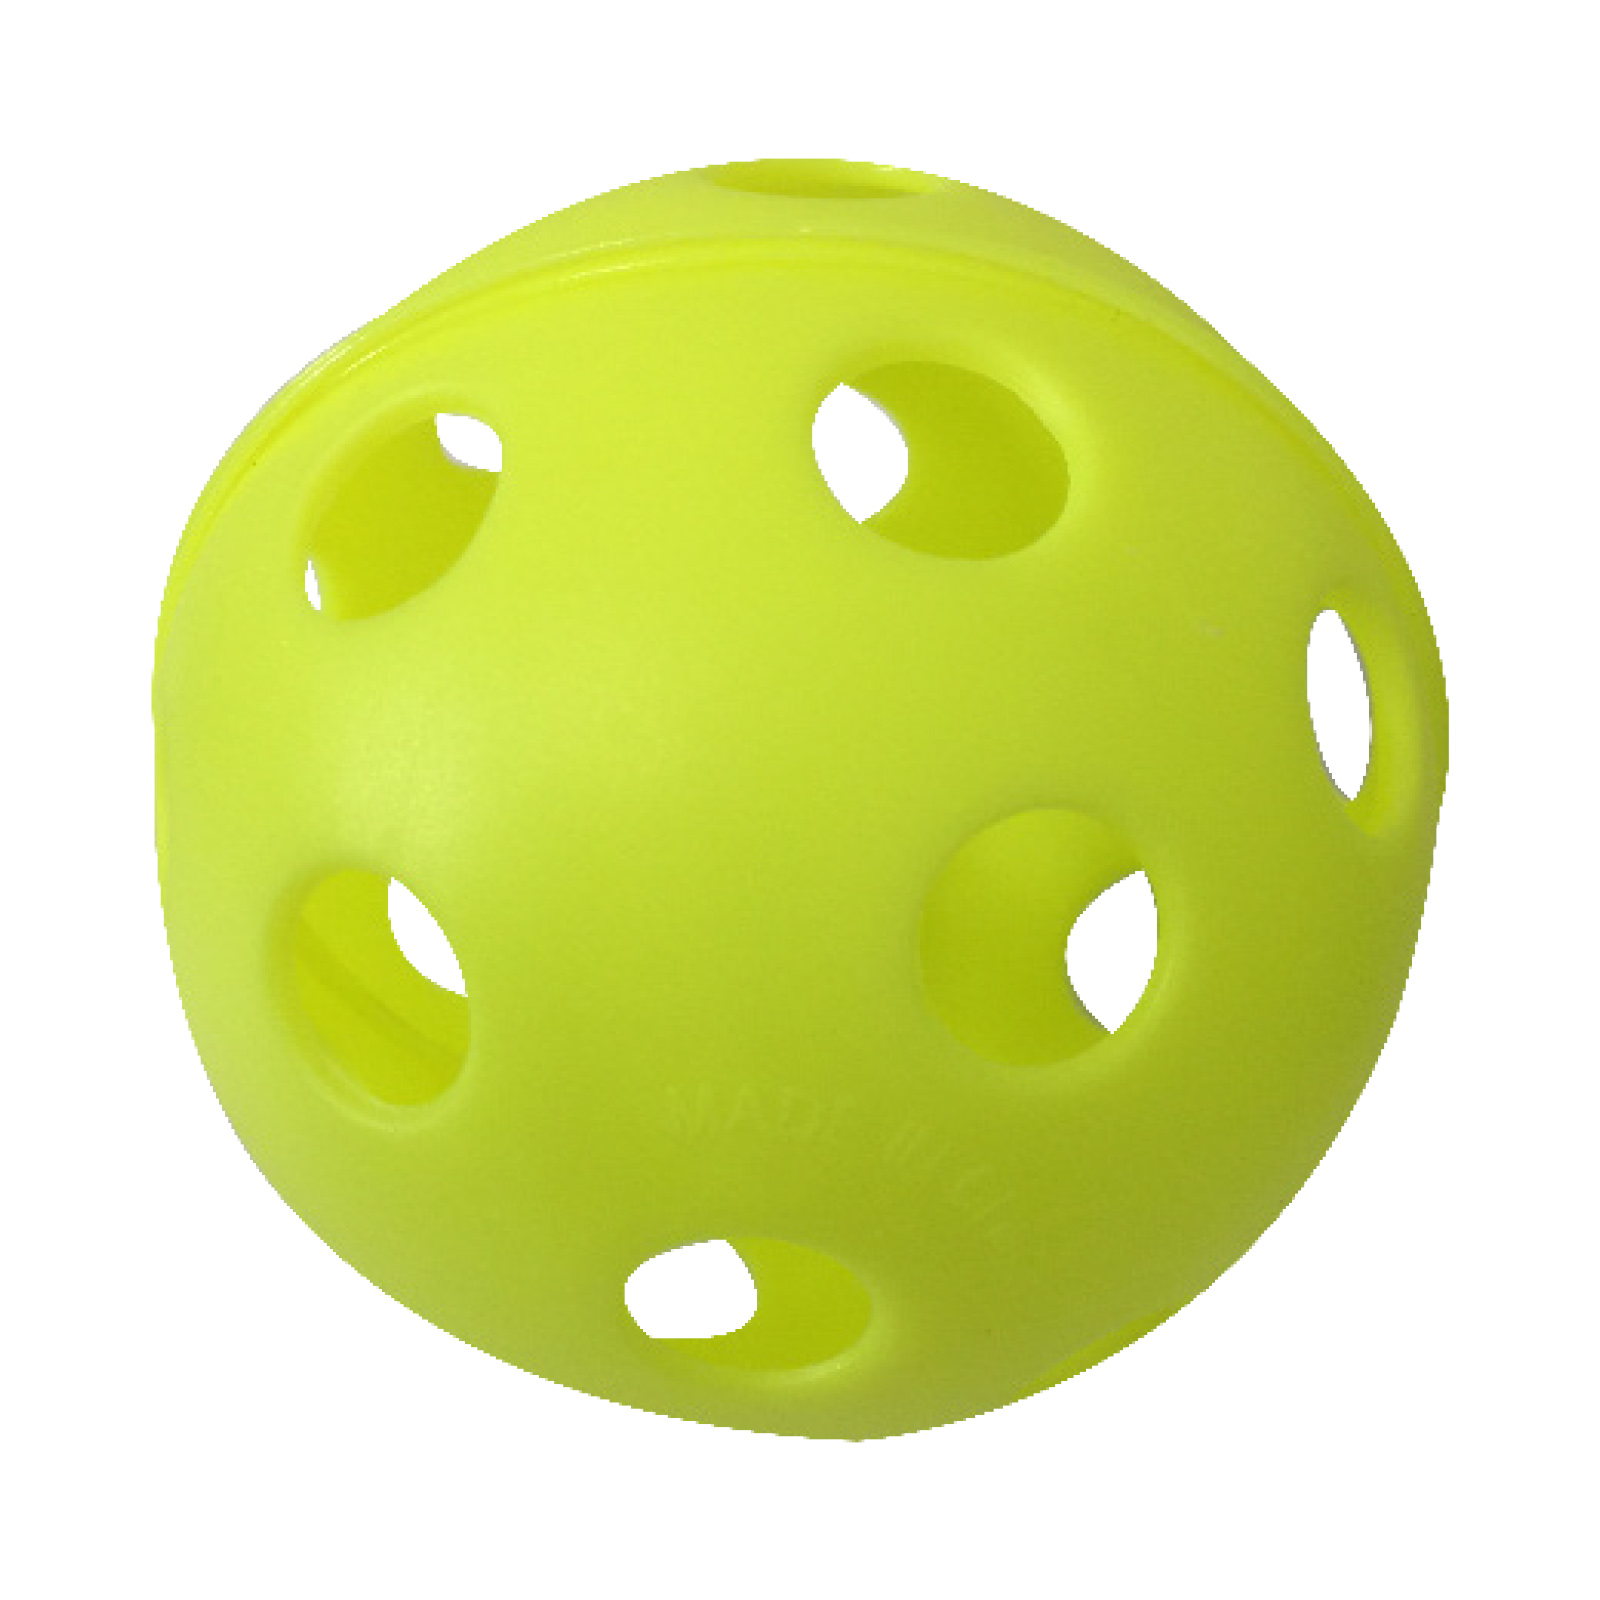 12 inch Wiffle Ball